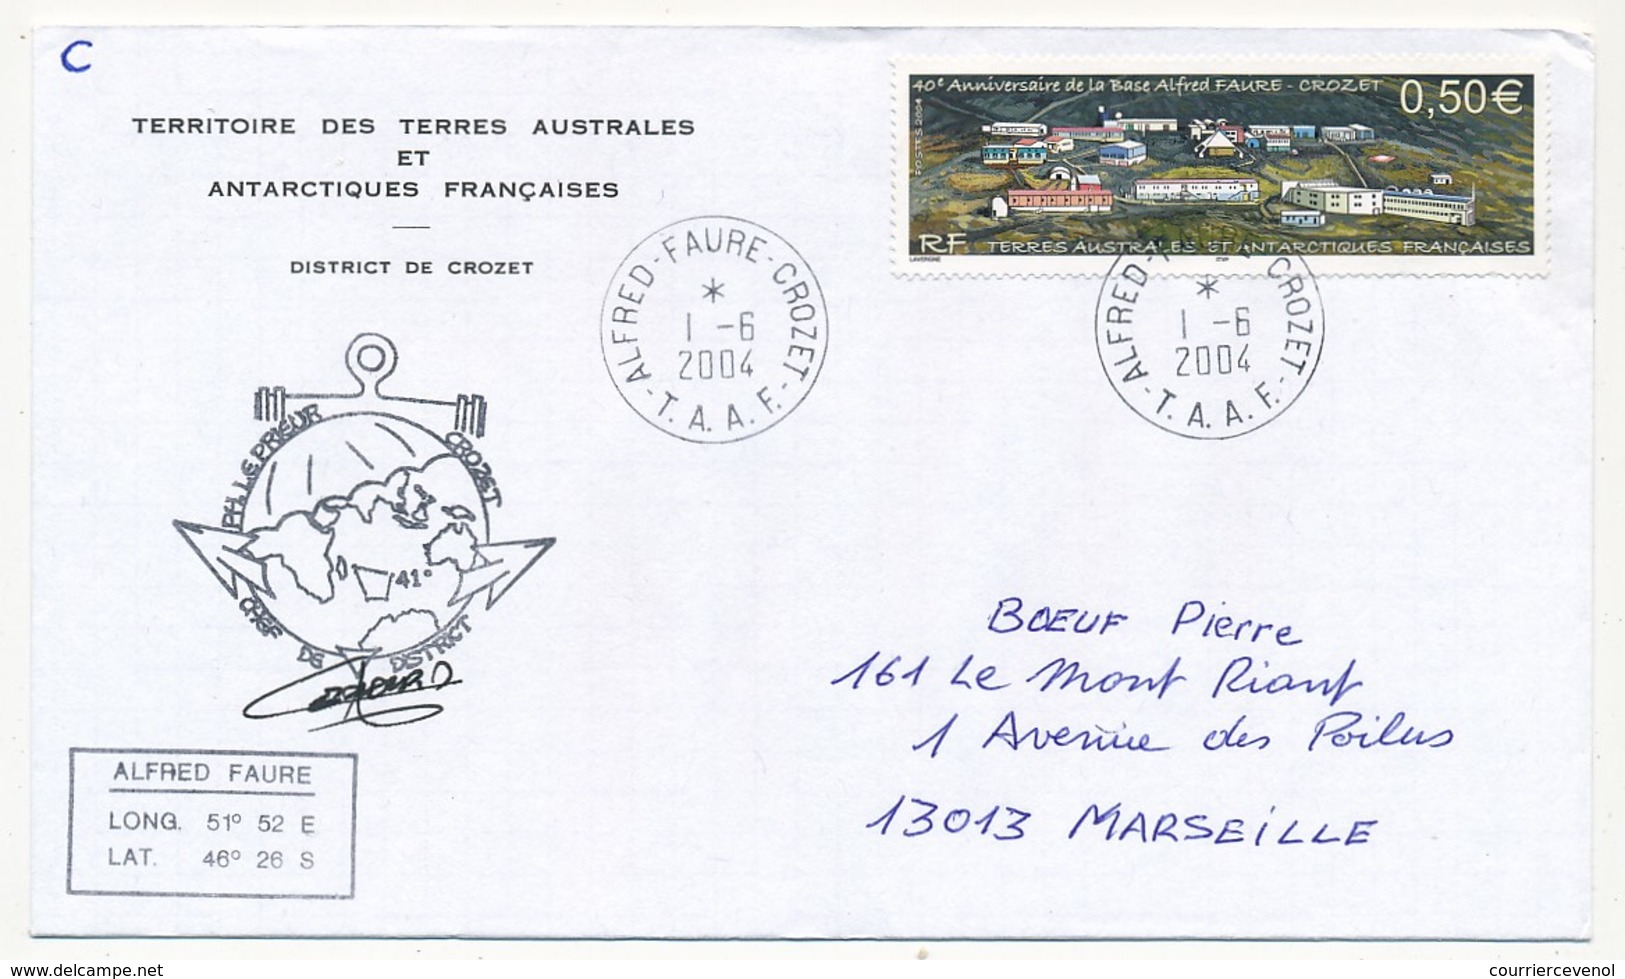 TAAF - Enveloppe - 0,50E Anniversaire De La Base - PH Le Prieur / Crozet - Alfred Faure Crozet 1/6/ 2004 - Covers & Documents